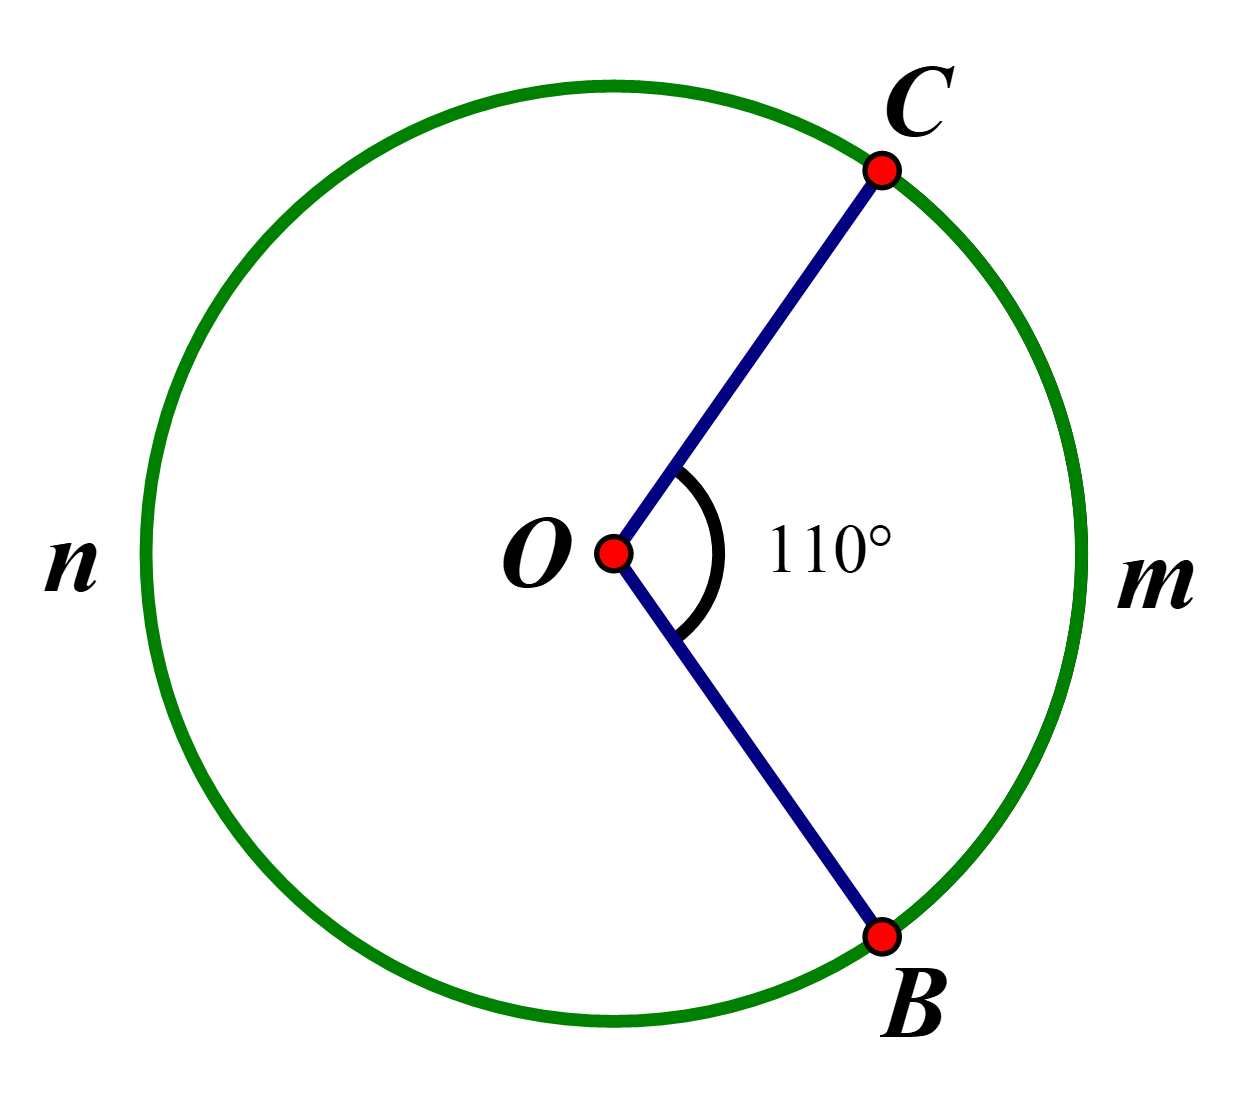 Cho hình vẽ bên. Biết góc BOC 110°, bán kính R = 3cm, độ dài cung BmC bằng (ảnh 1)